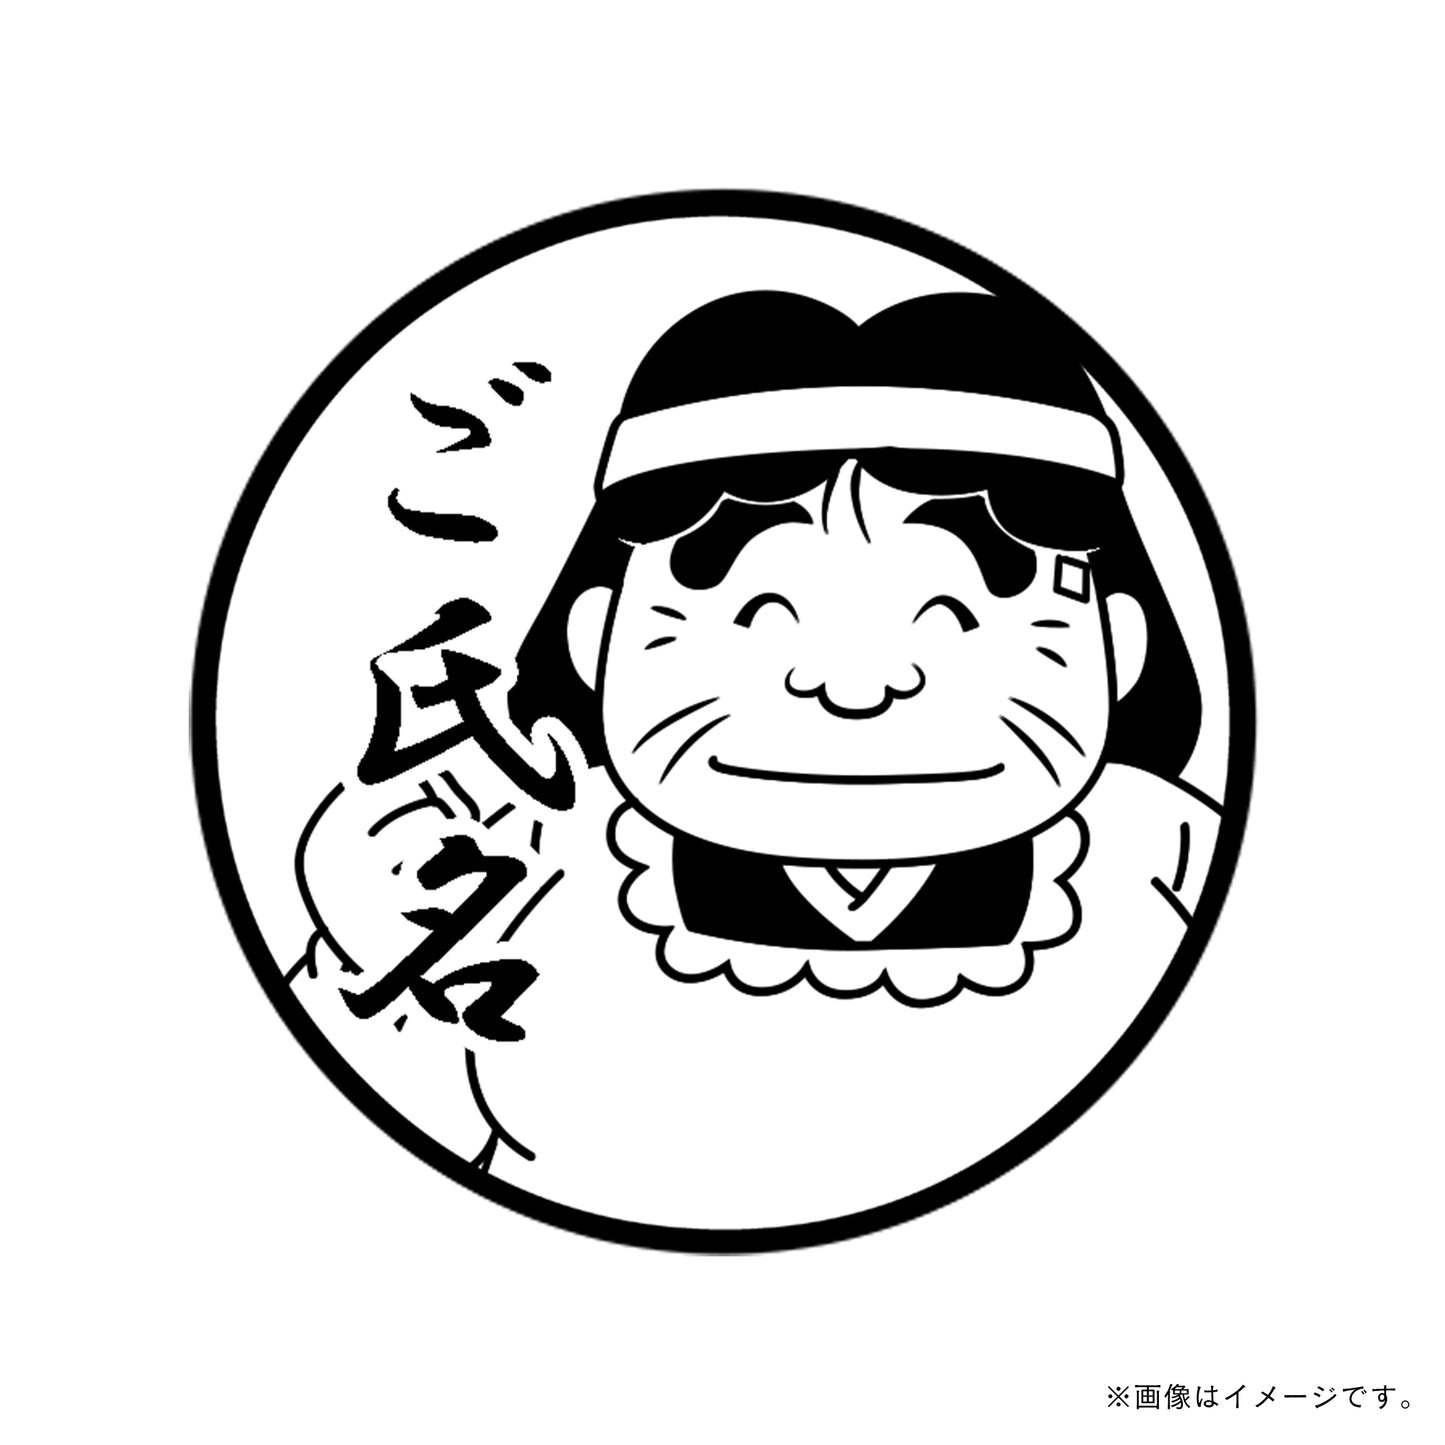 【忍たま乱太郎】忍術学園かんけい・食堂のおばちゃん・丸印18mm